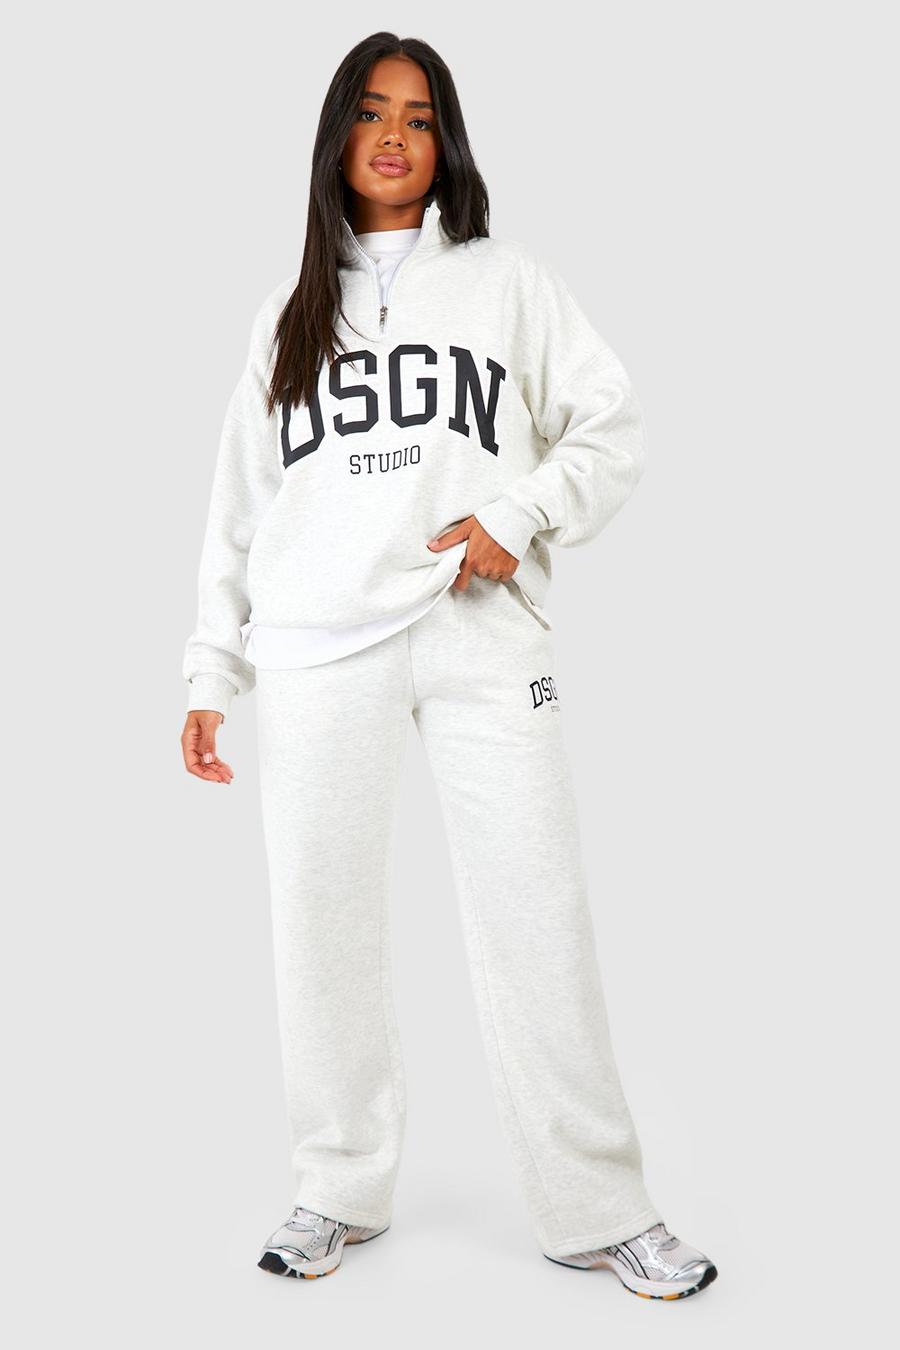 Pantalón deportivo recto con estampado de eslogan Dsgn Studio, Ash grey